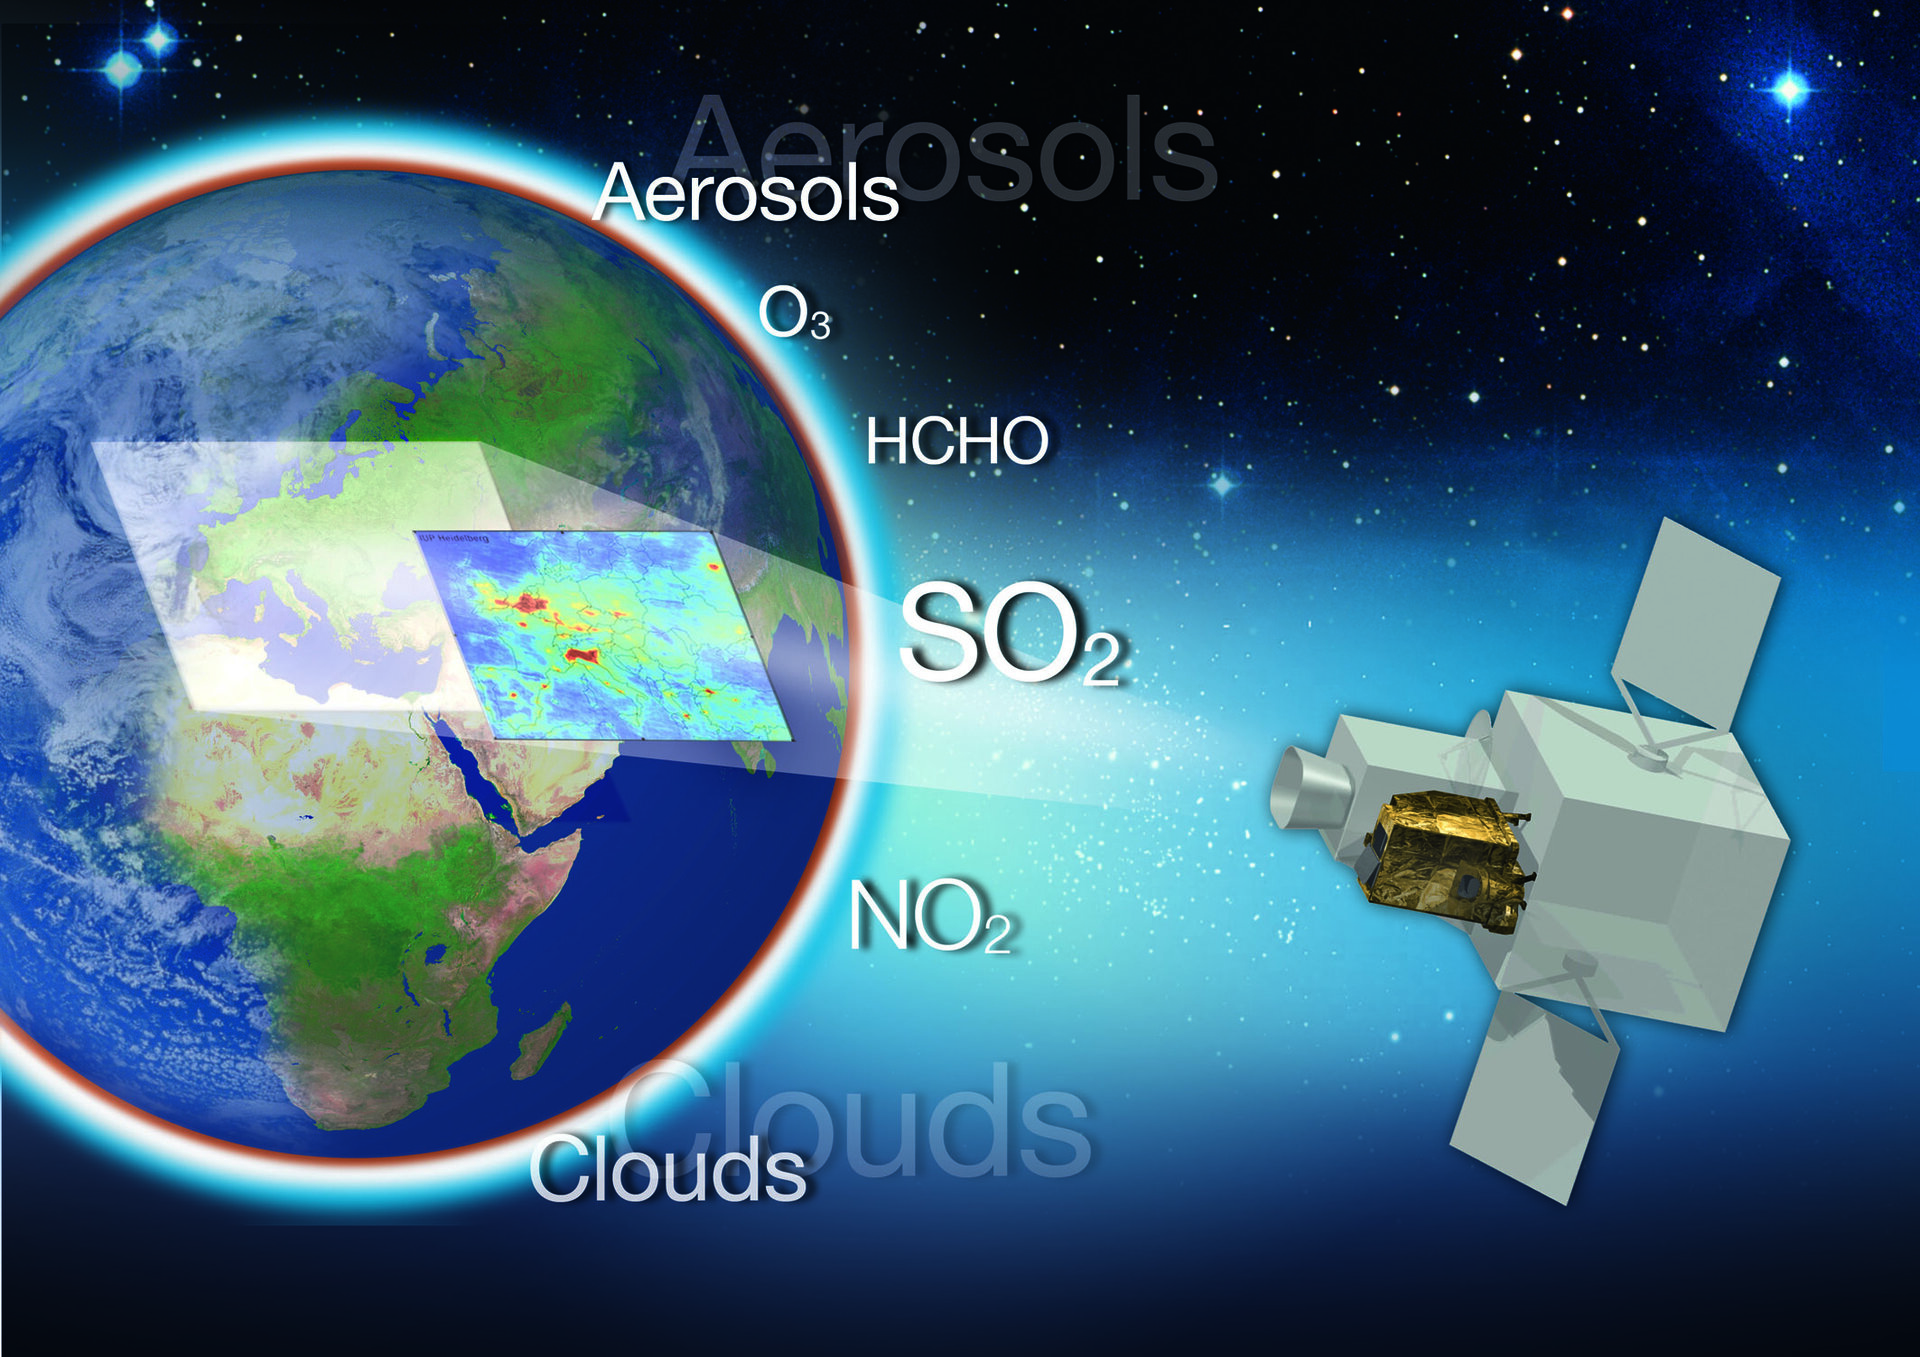  Sentinel 4 auf einem Meteosat-Satelliten überwacht die Atmosphäre